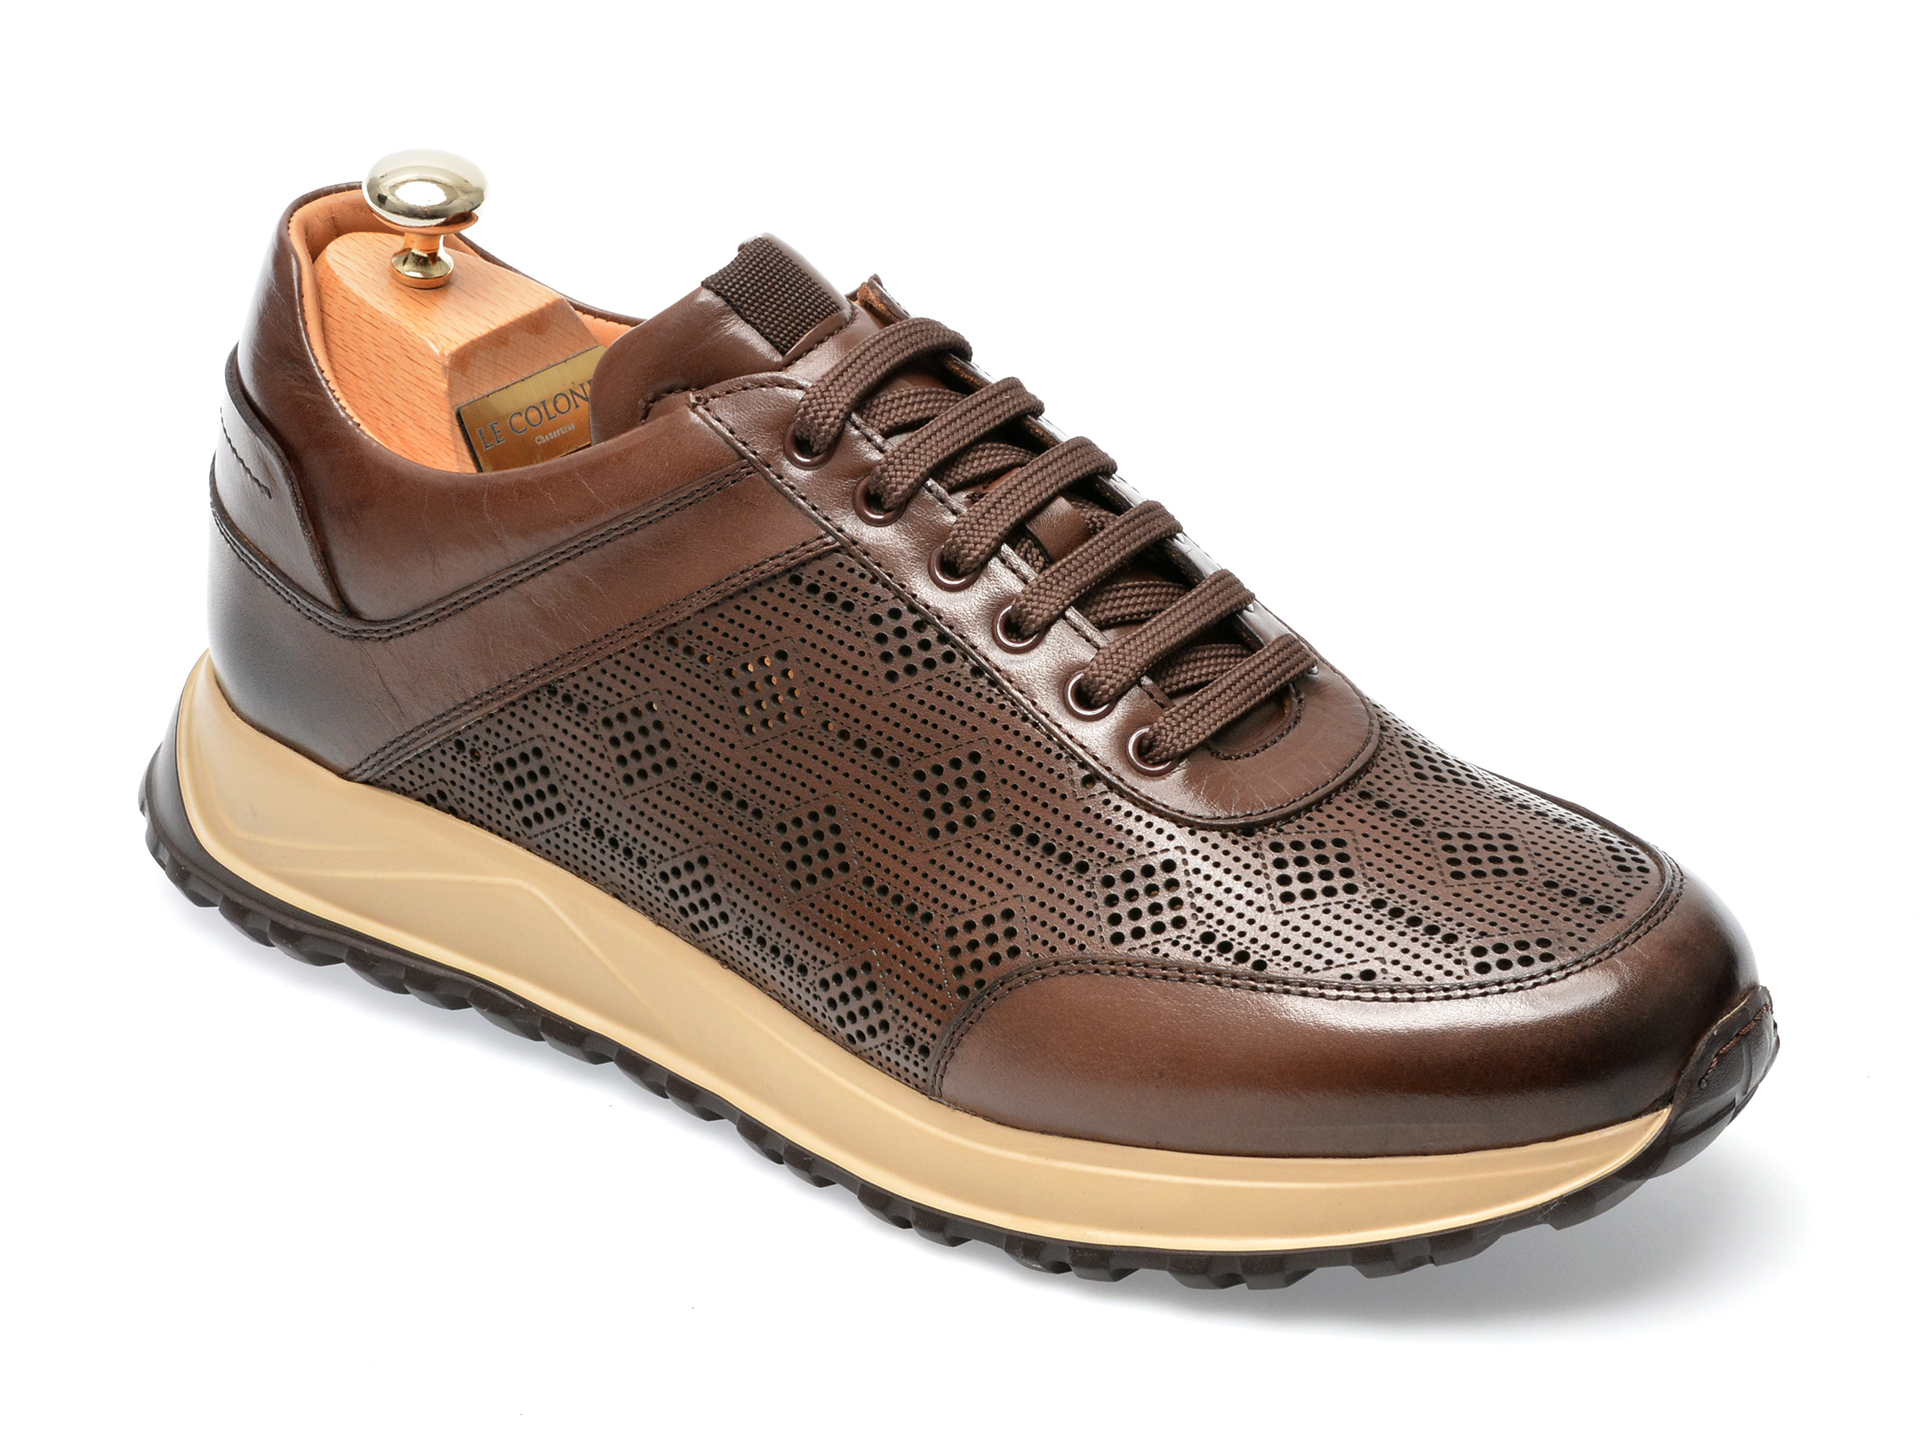 Pantofi LE COLONEL maro, 49438, din piele naturala barbati 2023-05-28